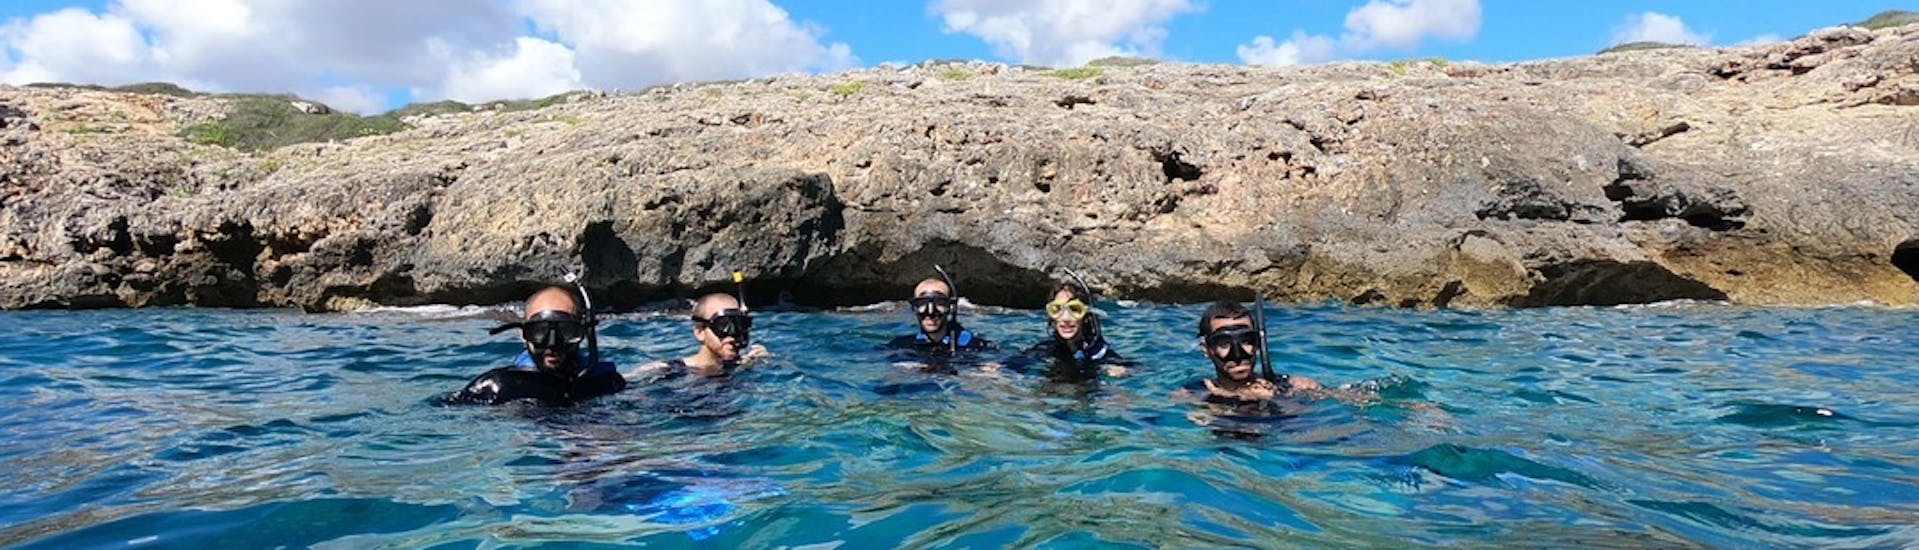 Een deelnemer poseert voor de camera tijdens een onderwaterduik op Mallorca tijdens een duikcursus gegeven door Albatros Diving.